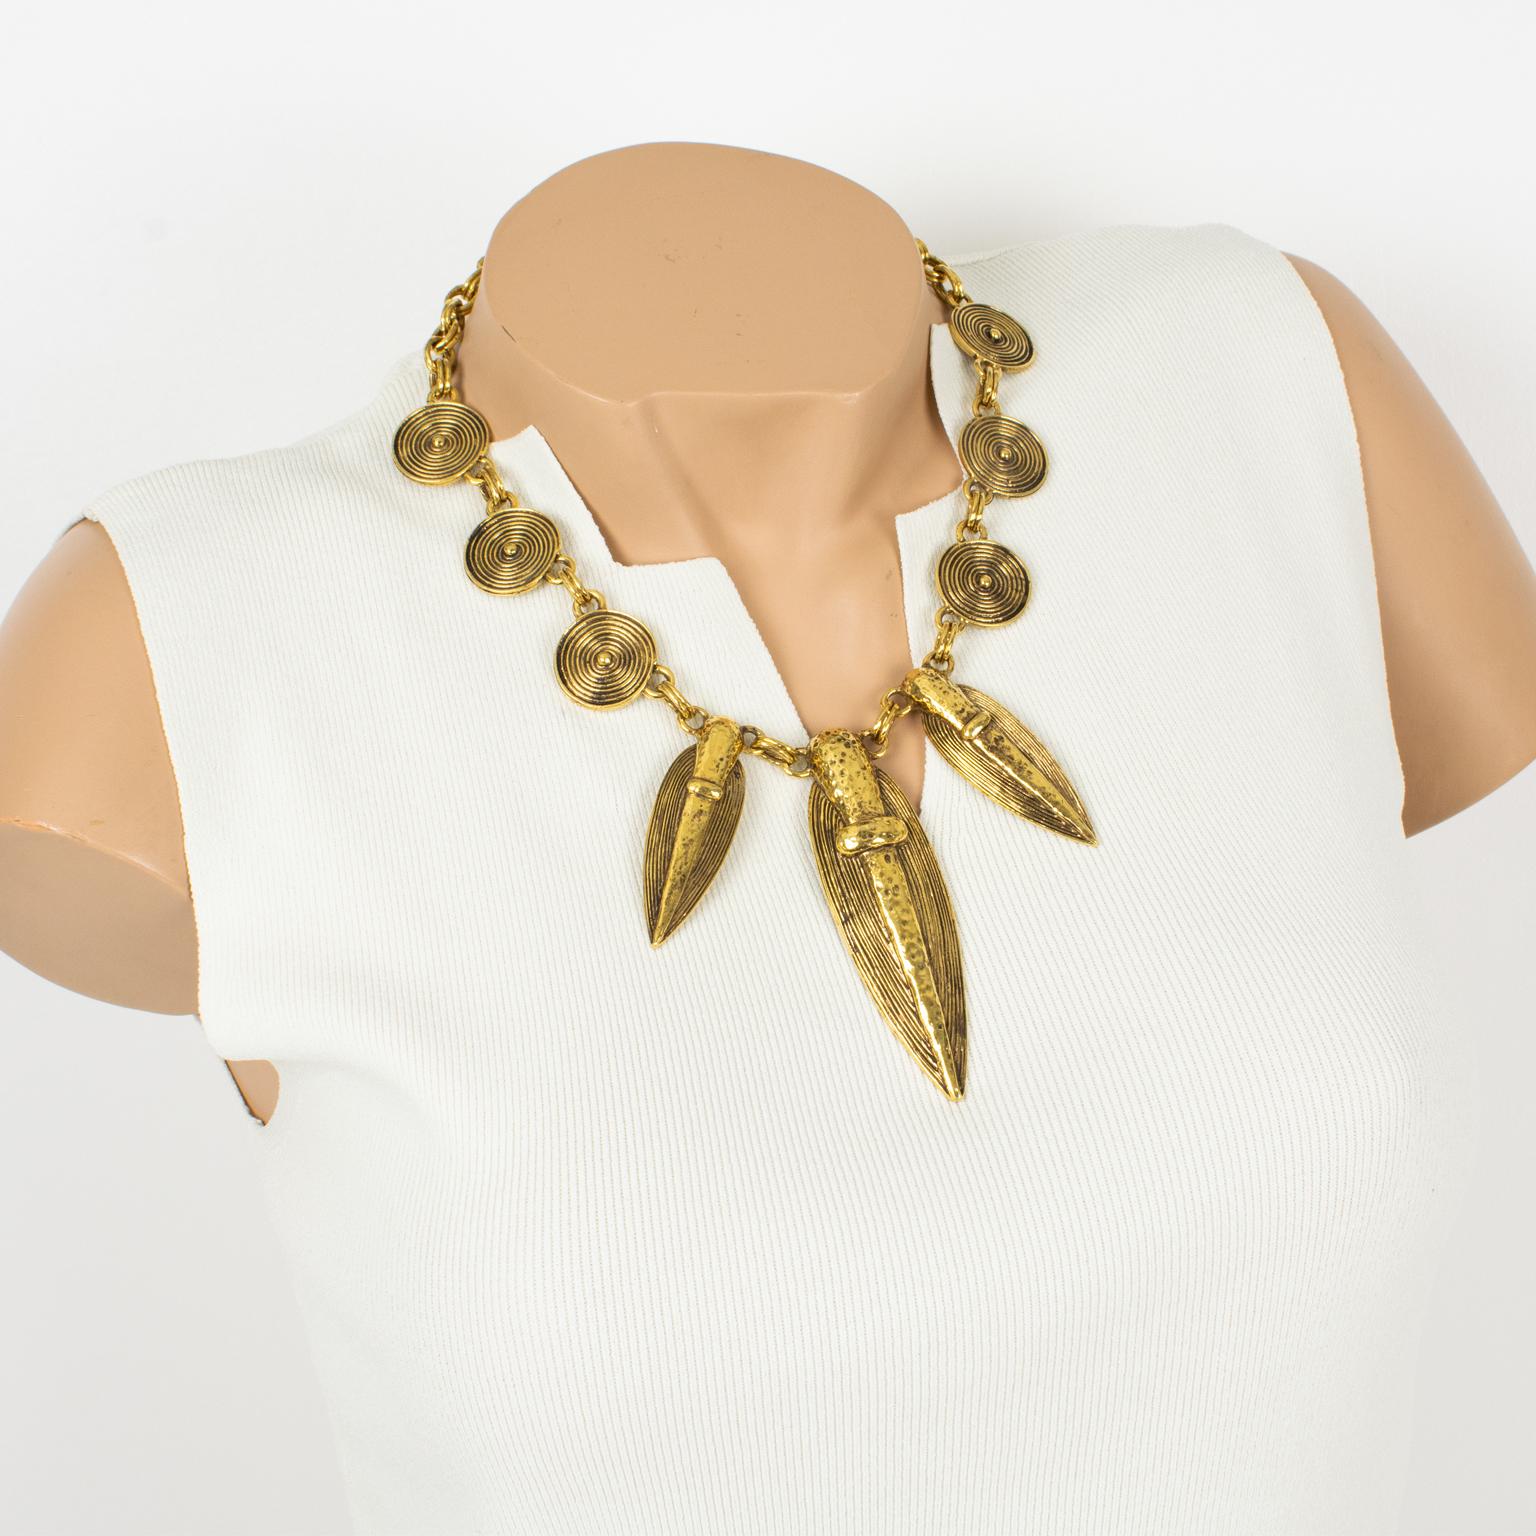 Guy Laroche Paris a conçu ce collier ras de cou tribal raffiné dans les années 1990. Le pendentif présente des charmes d'inspiration sud-américaine, probablement précolombienne, en métal doré sculpté et texturé. La lourde chaîne à double brin en